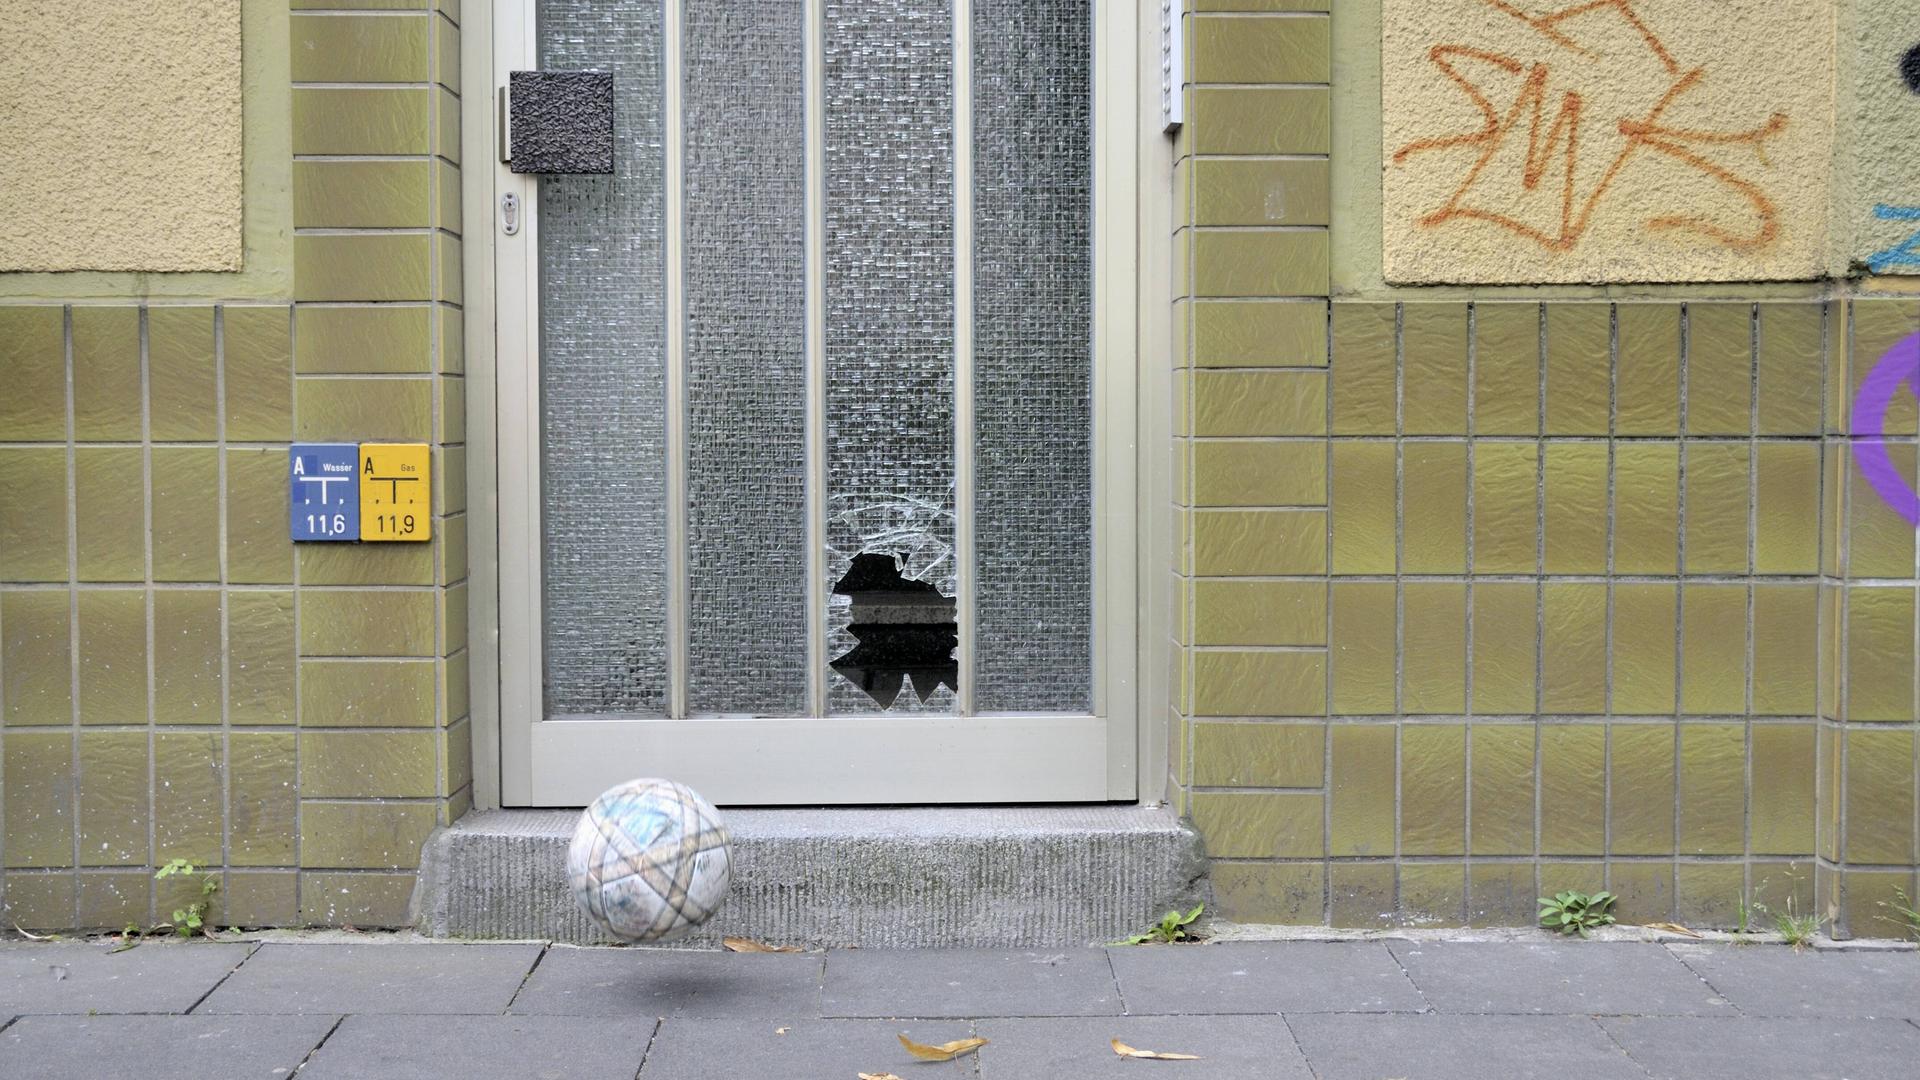 Schaden beim Spielen: Ein Fußall hat an einer Wohnungstür für eine zerbrochene Glasscheibe gesorgt.